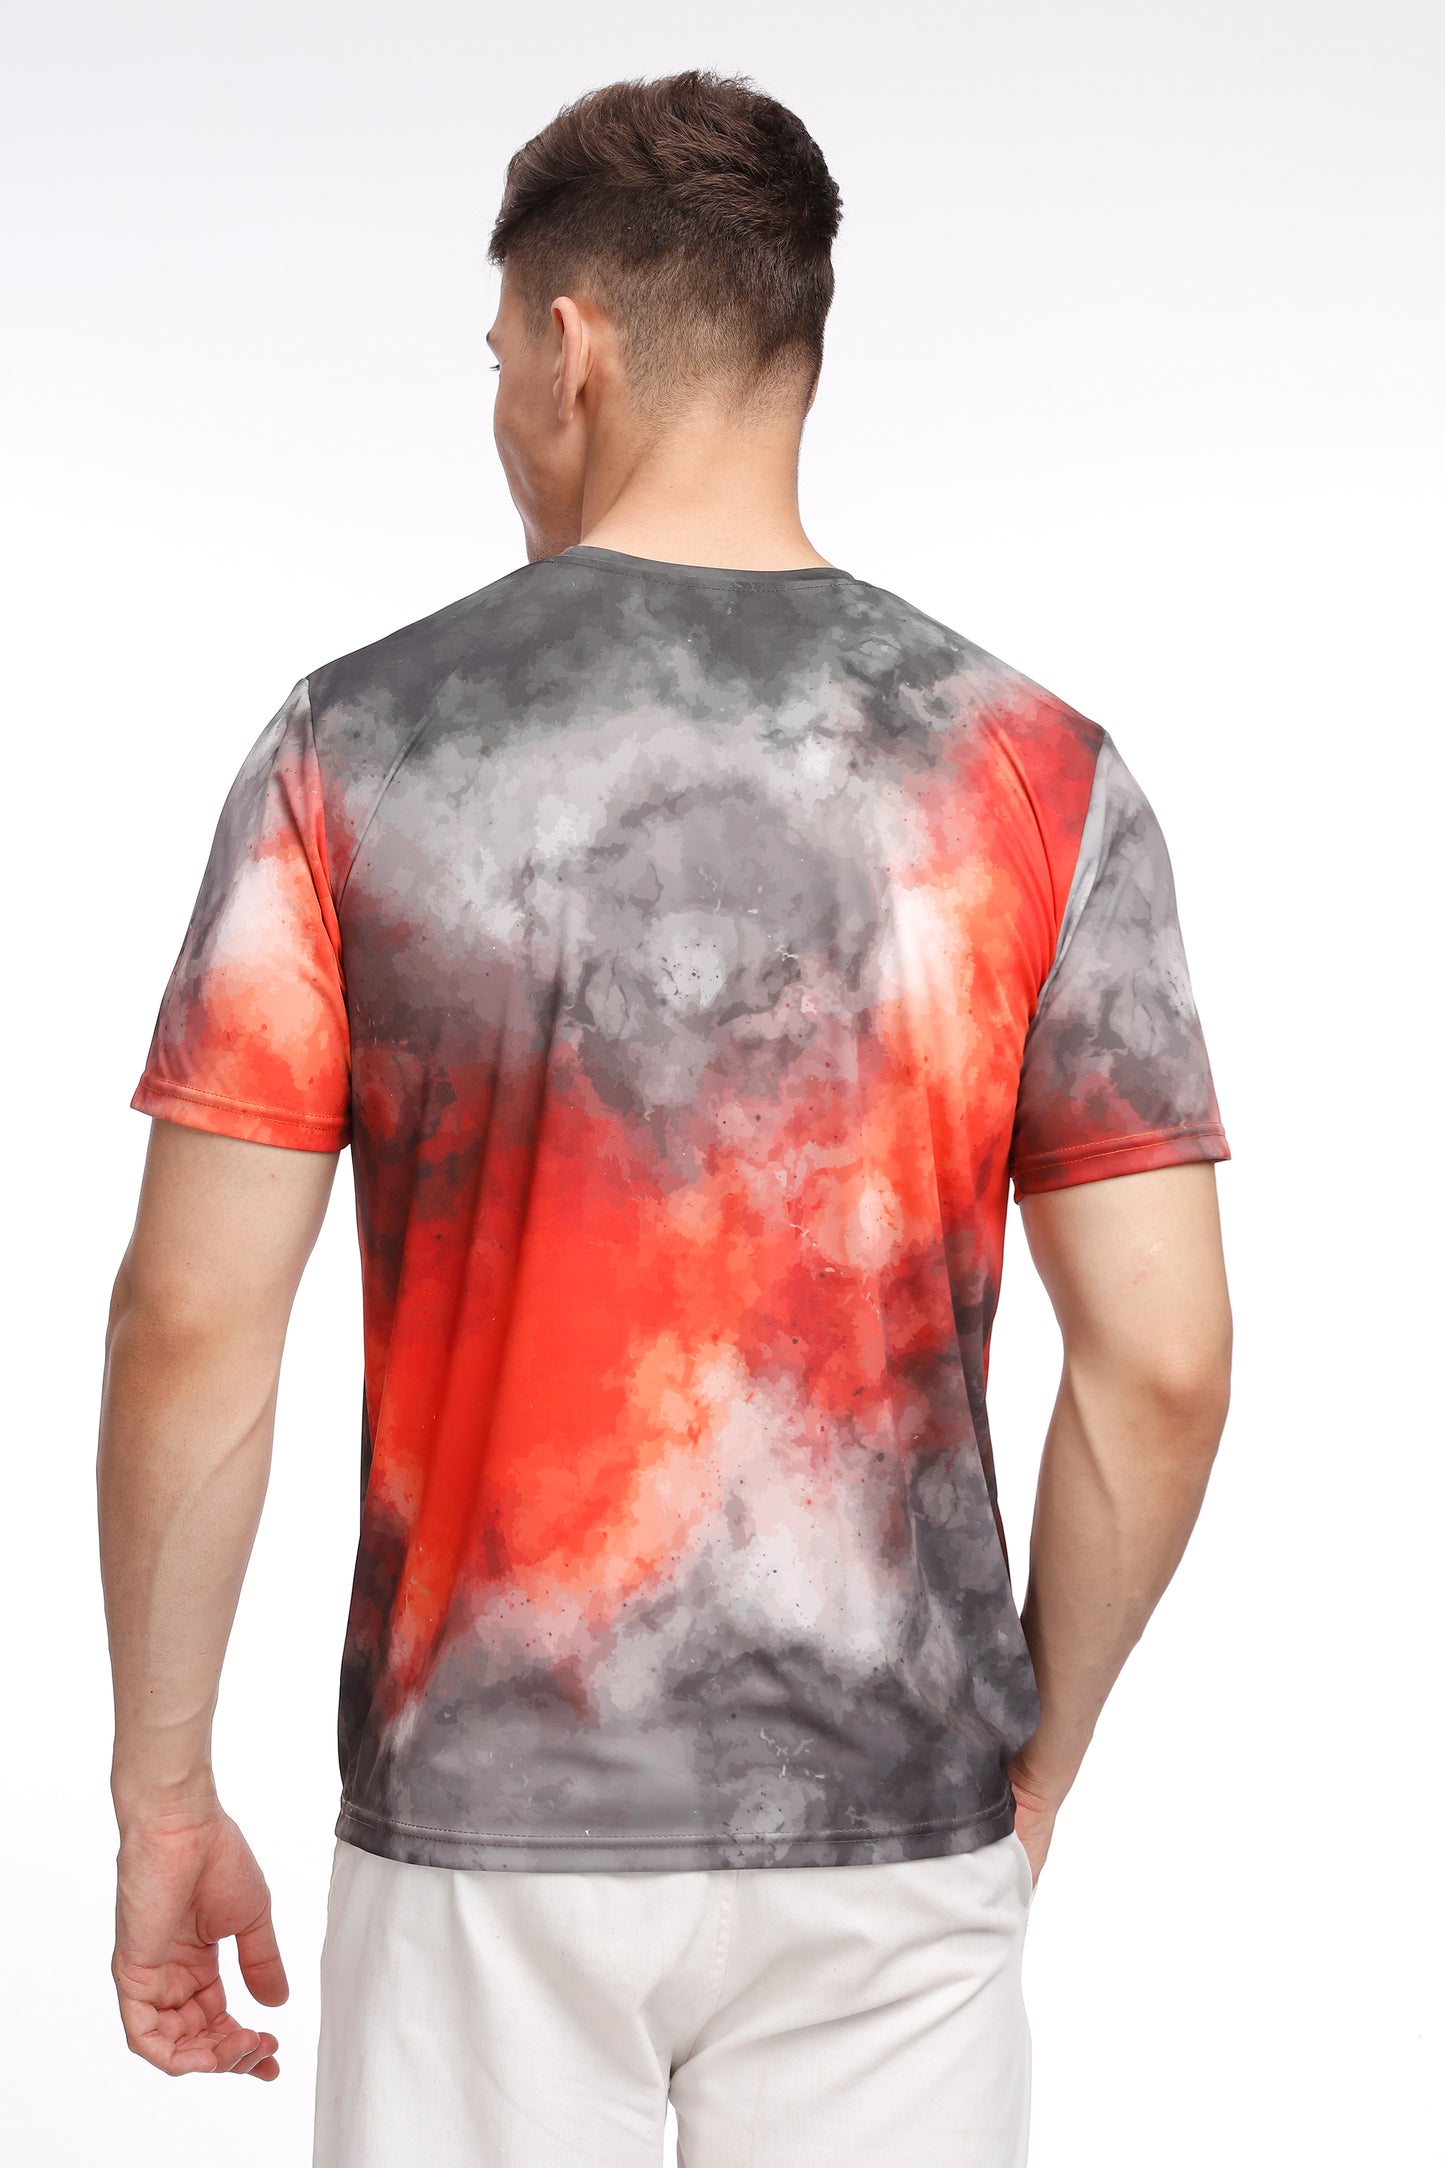 Crimson Flames SRH Fan T-Shirt